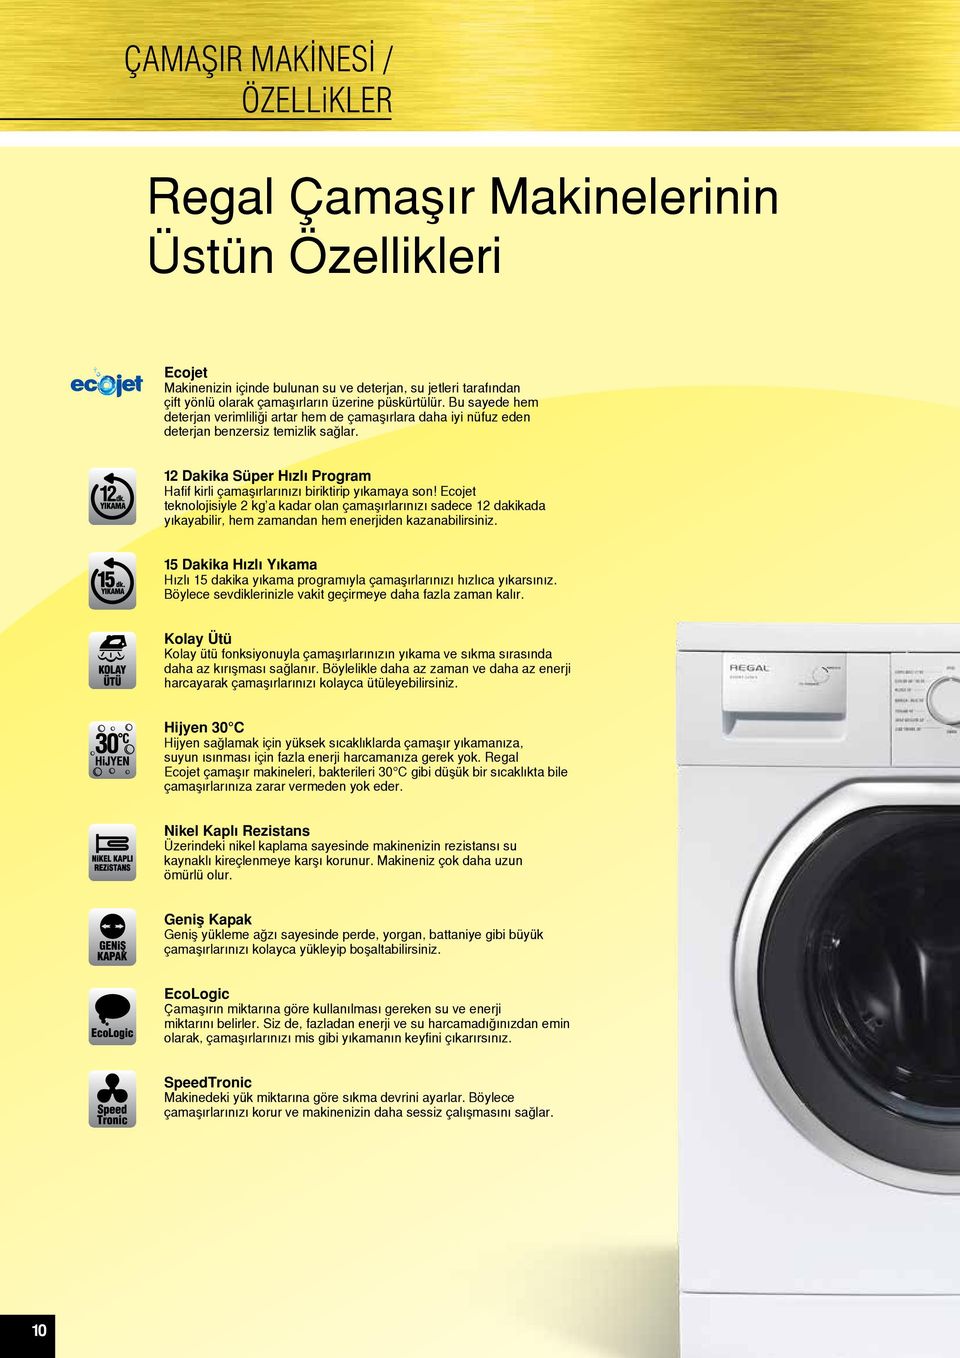 Ecojet teknolojisiyle 2 kg a kadar olan çamaşırlarınızı sadece 12 dakikada yıkayabilir, hem zamandan hem enerjiden kazanabilirsiniz.